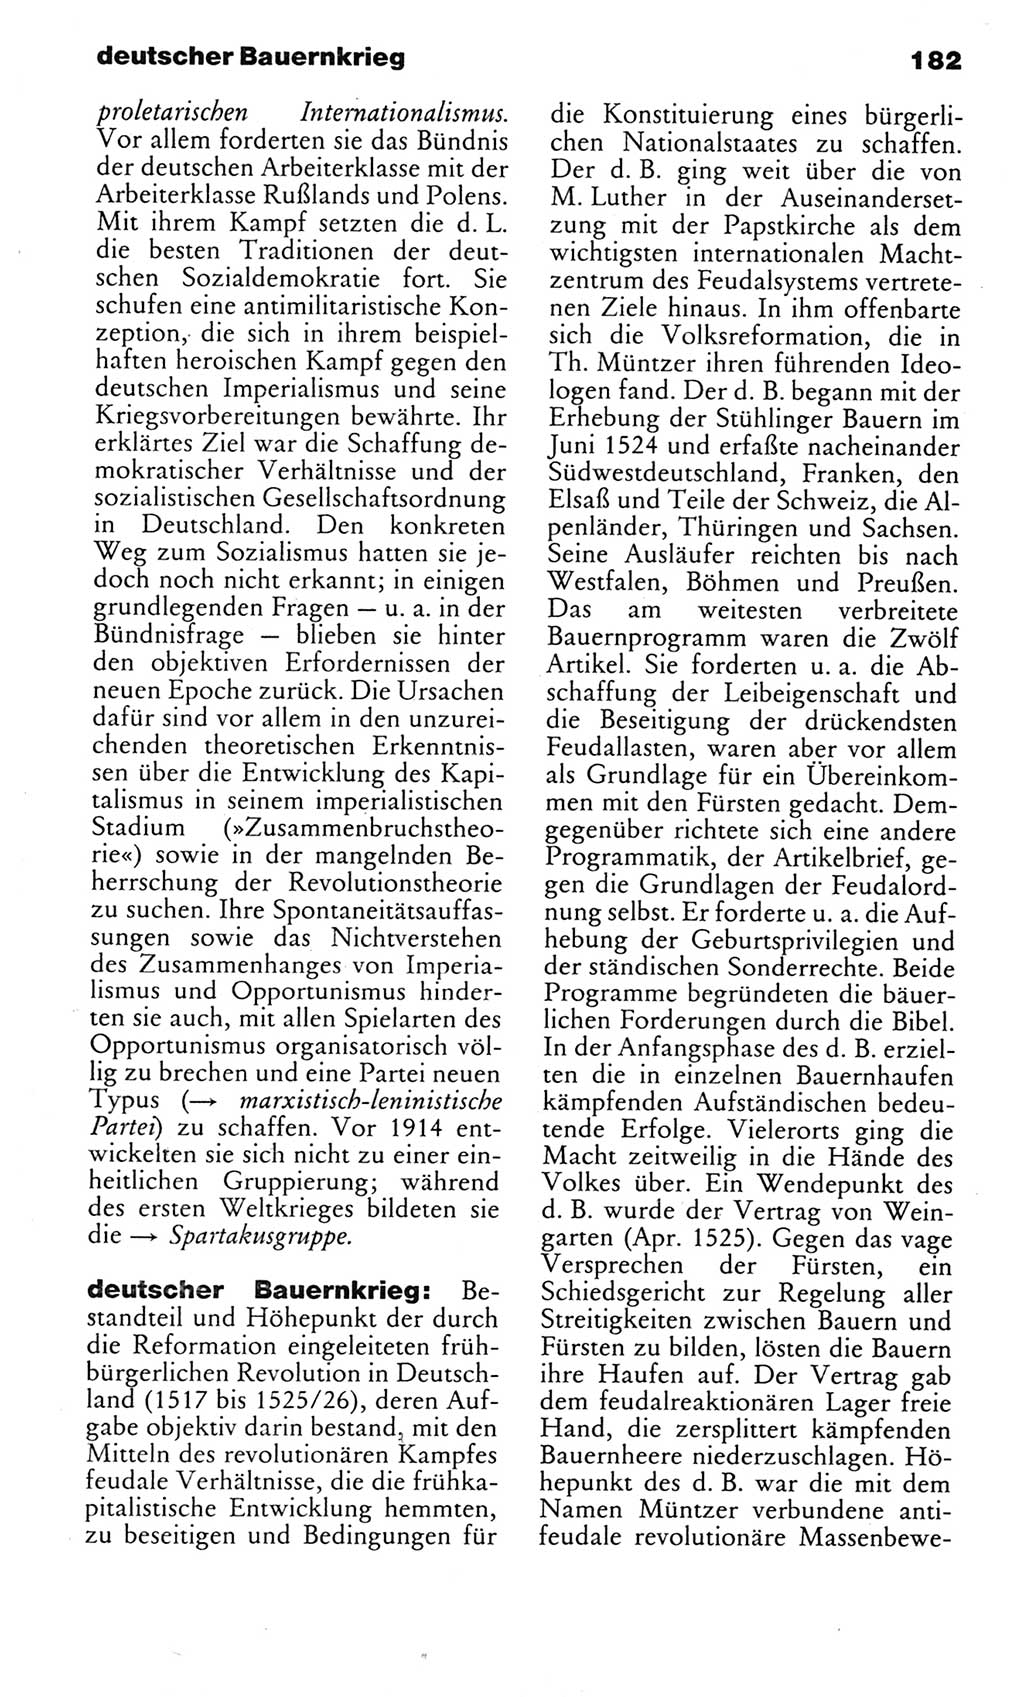 Kleines politisches Wörterbuch [Deutsche Demokratische Republik (DDR)] 1983, Seite 182 (Kl. pol. Wb. DDR 1983, S. 182)